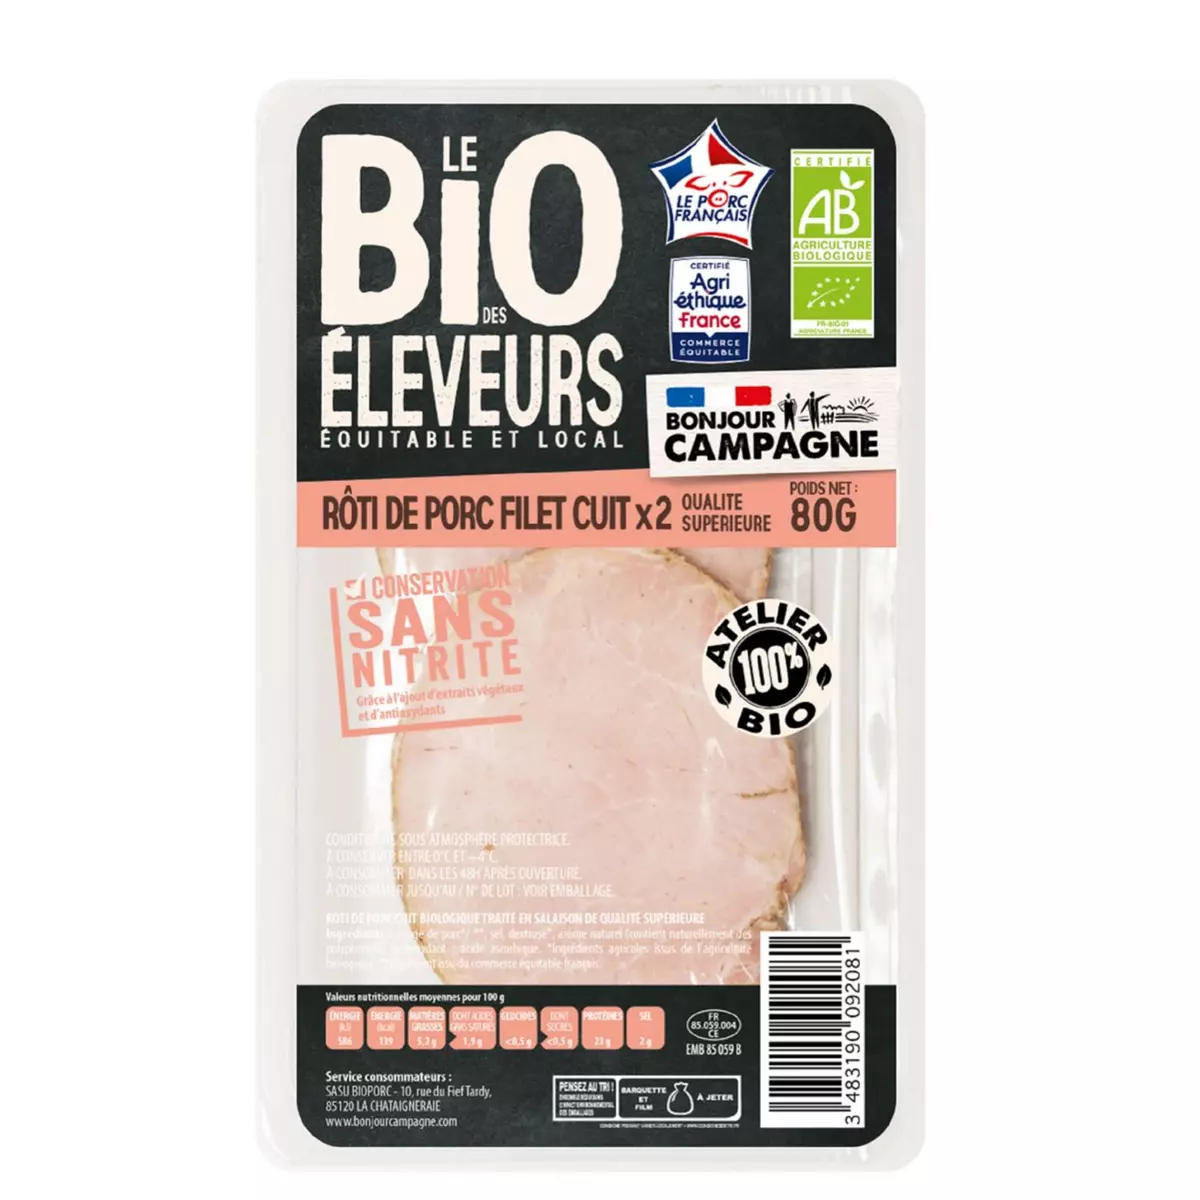 BONJOUR CAMPAGNE Roti de porc bio filet cuit sans nitrite 2 pièces 80g